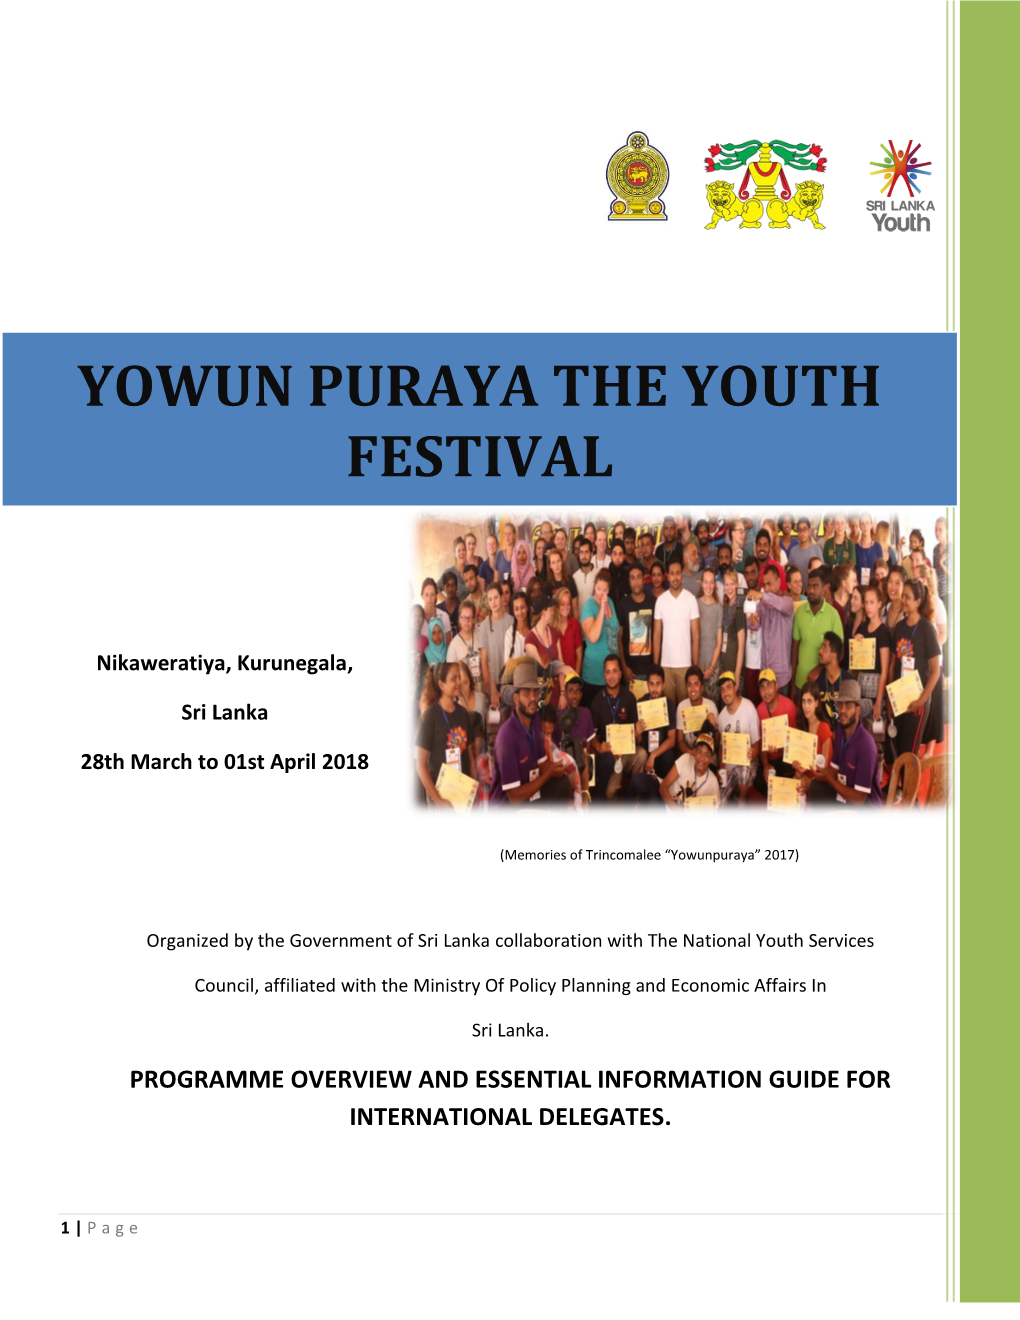 Yowun Puraya the Youth Festival